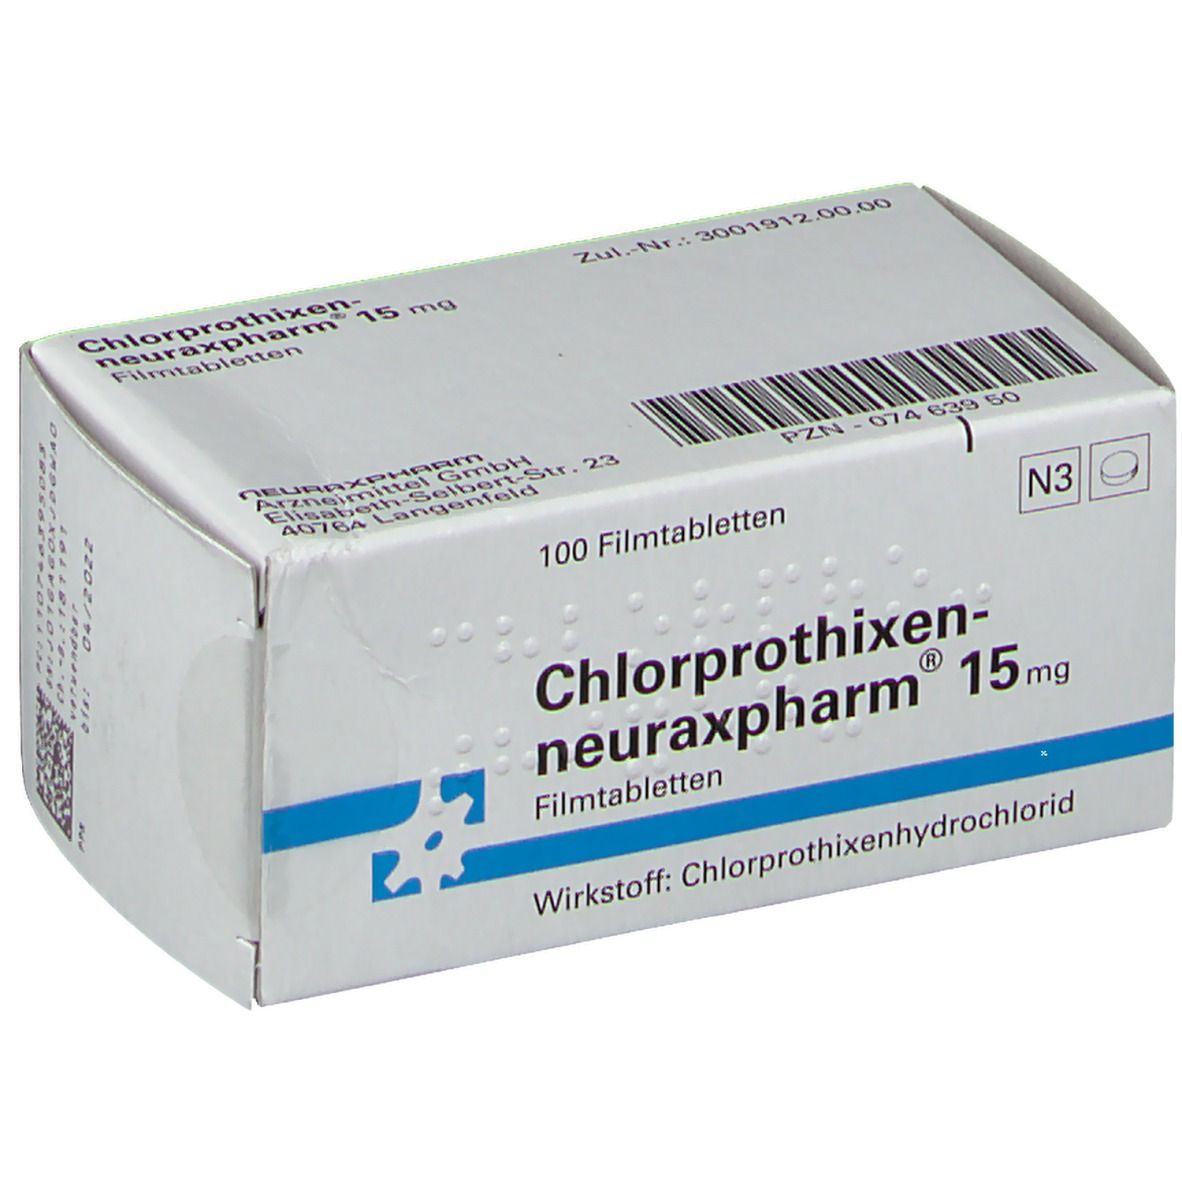 Chlorprothixen-neuraxpharm® 15 mg